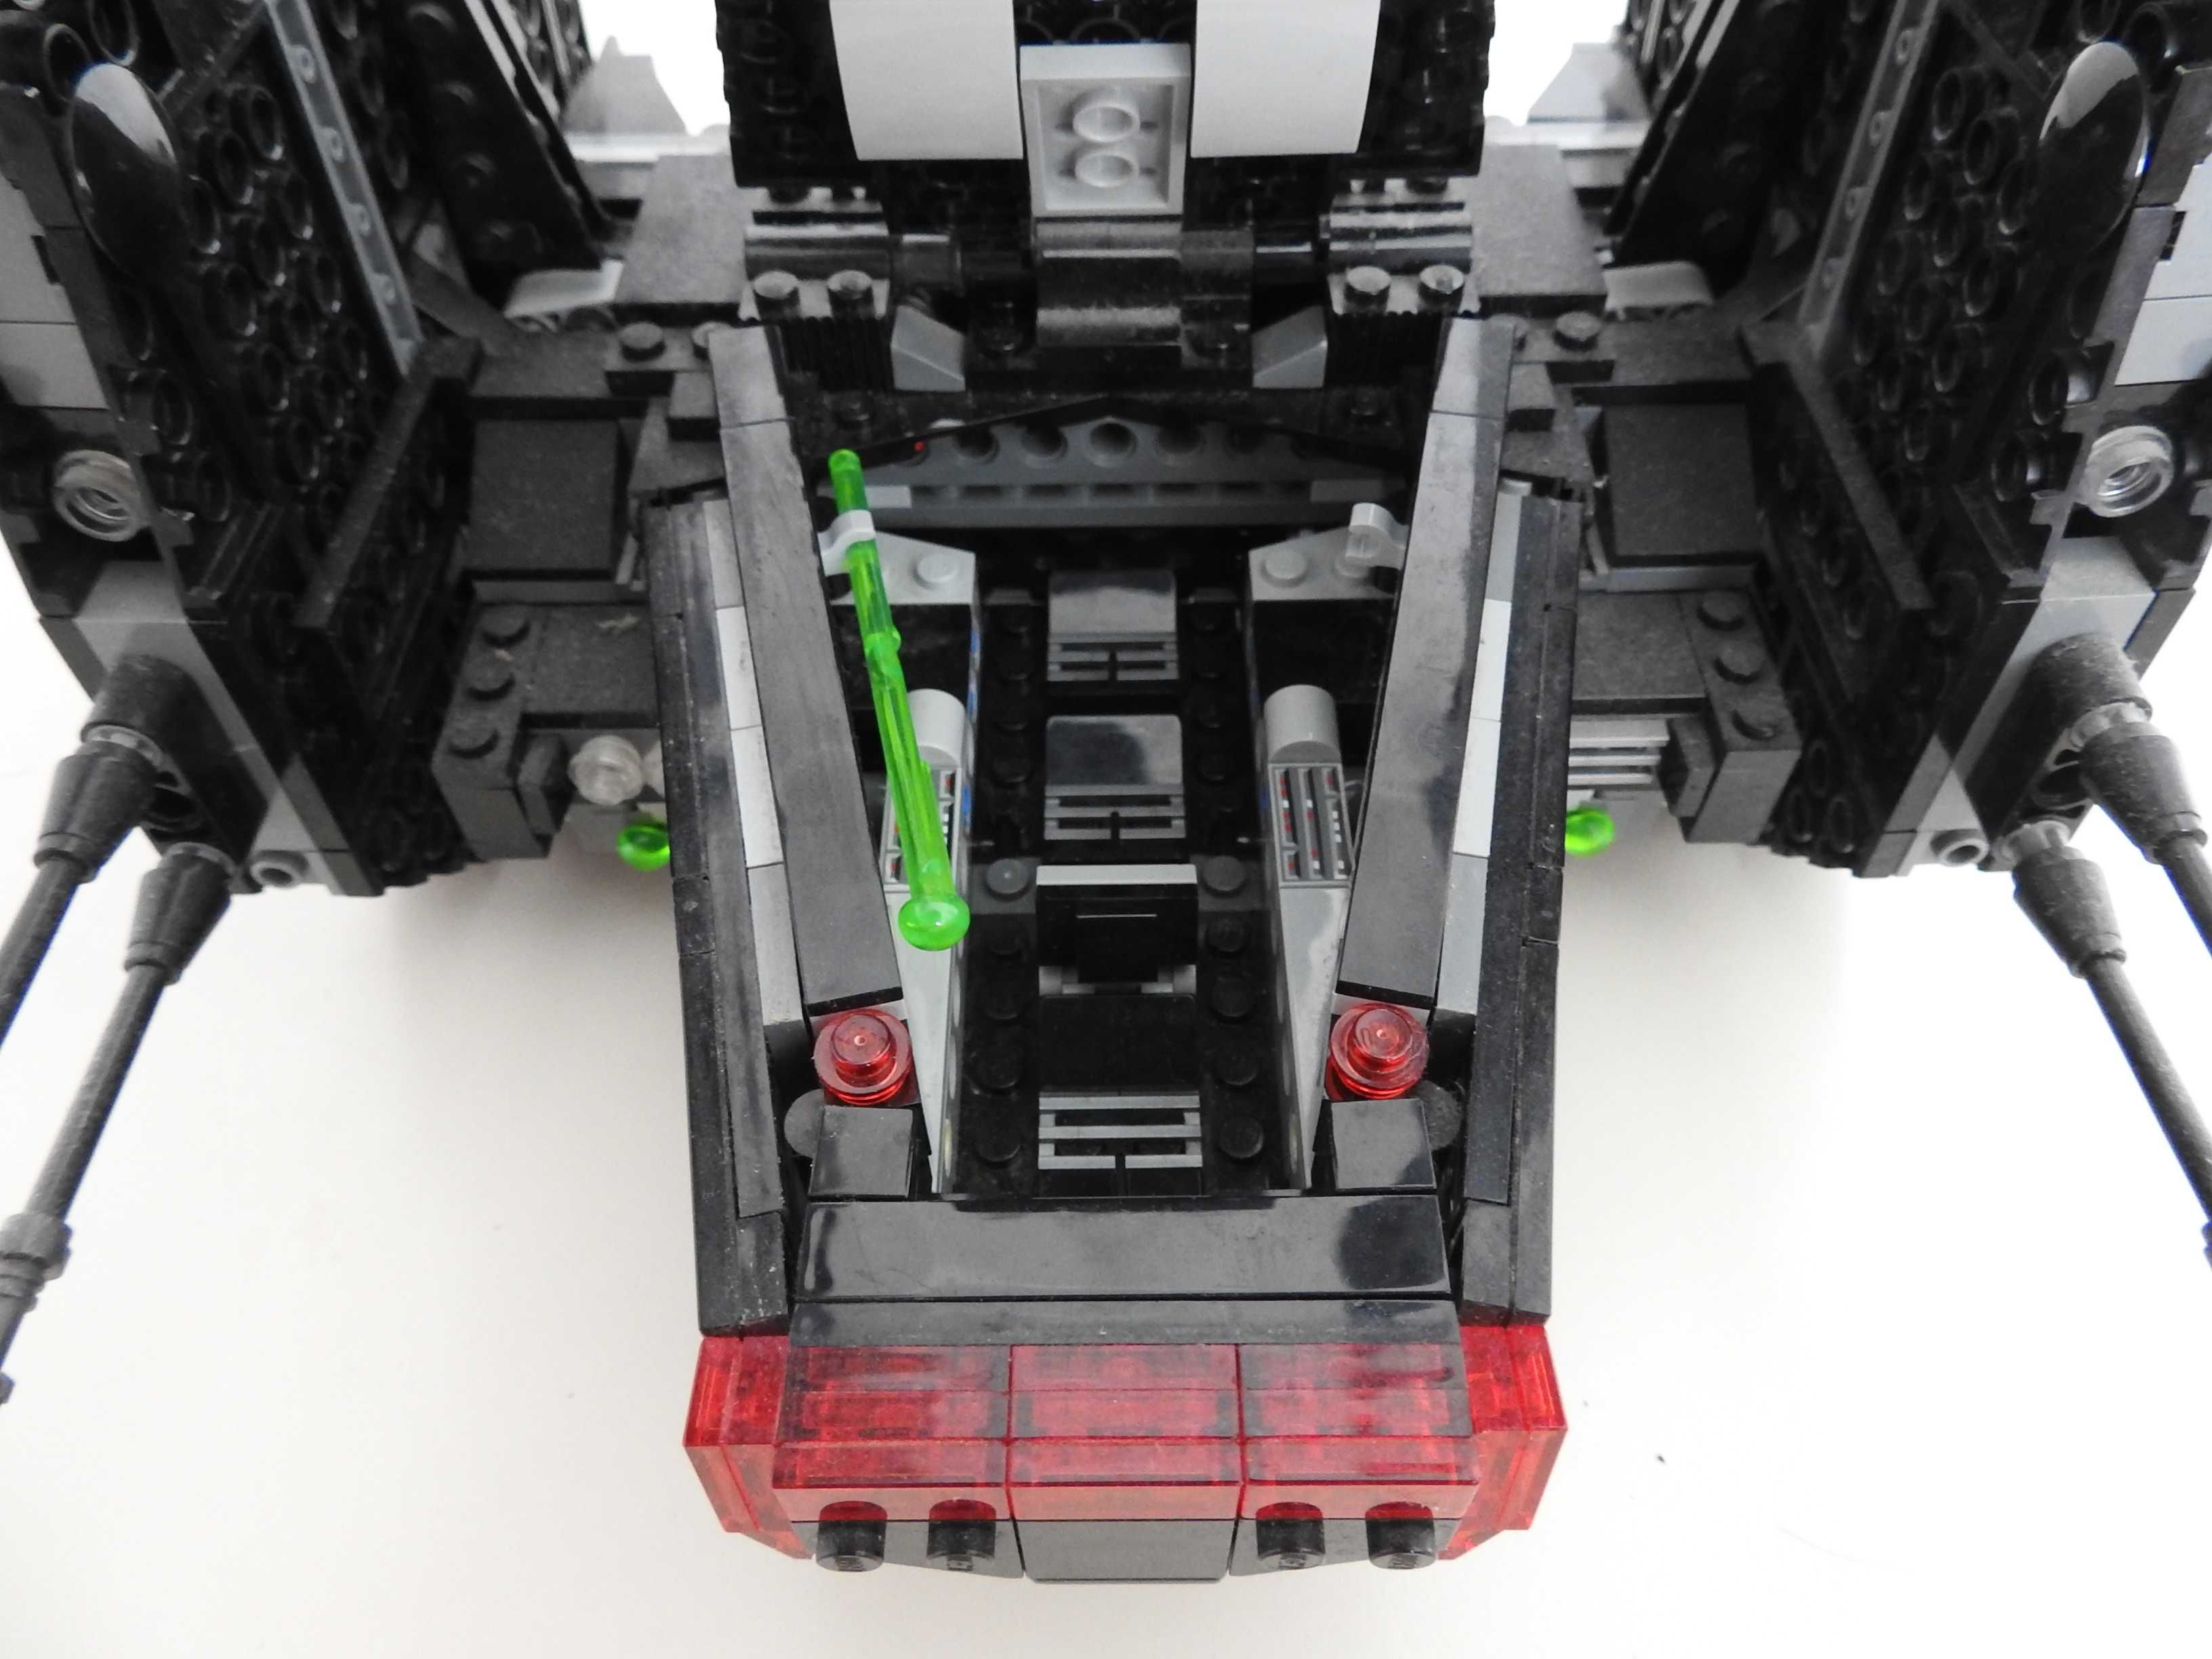 Lego Star Wars Wahadłowiec Kylo Rena